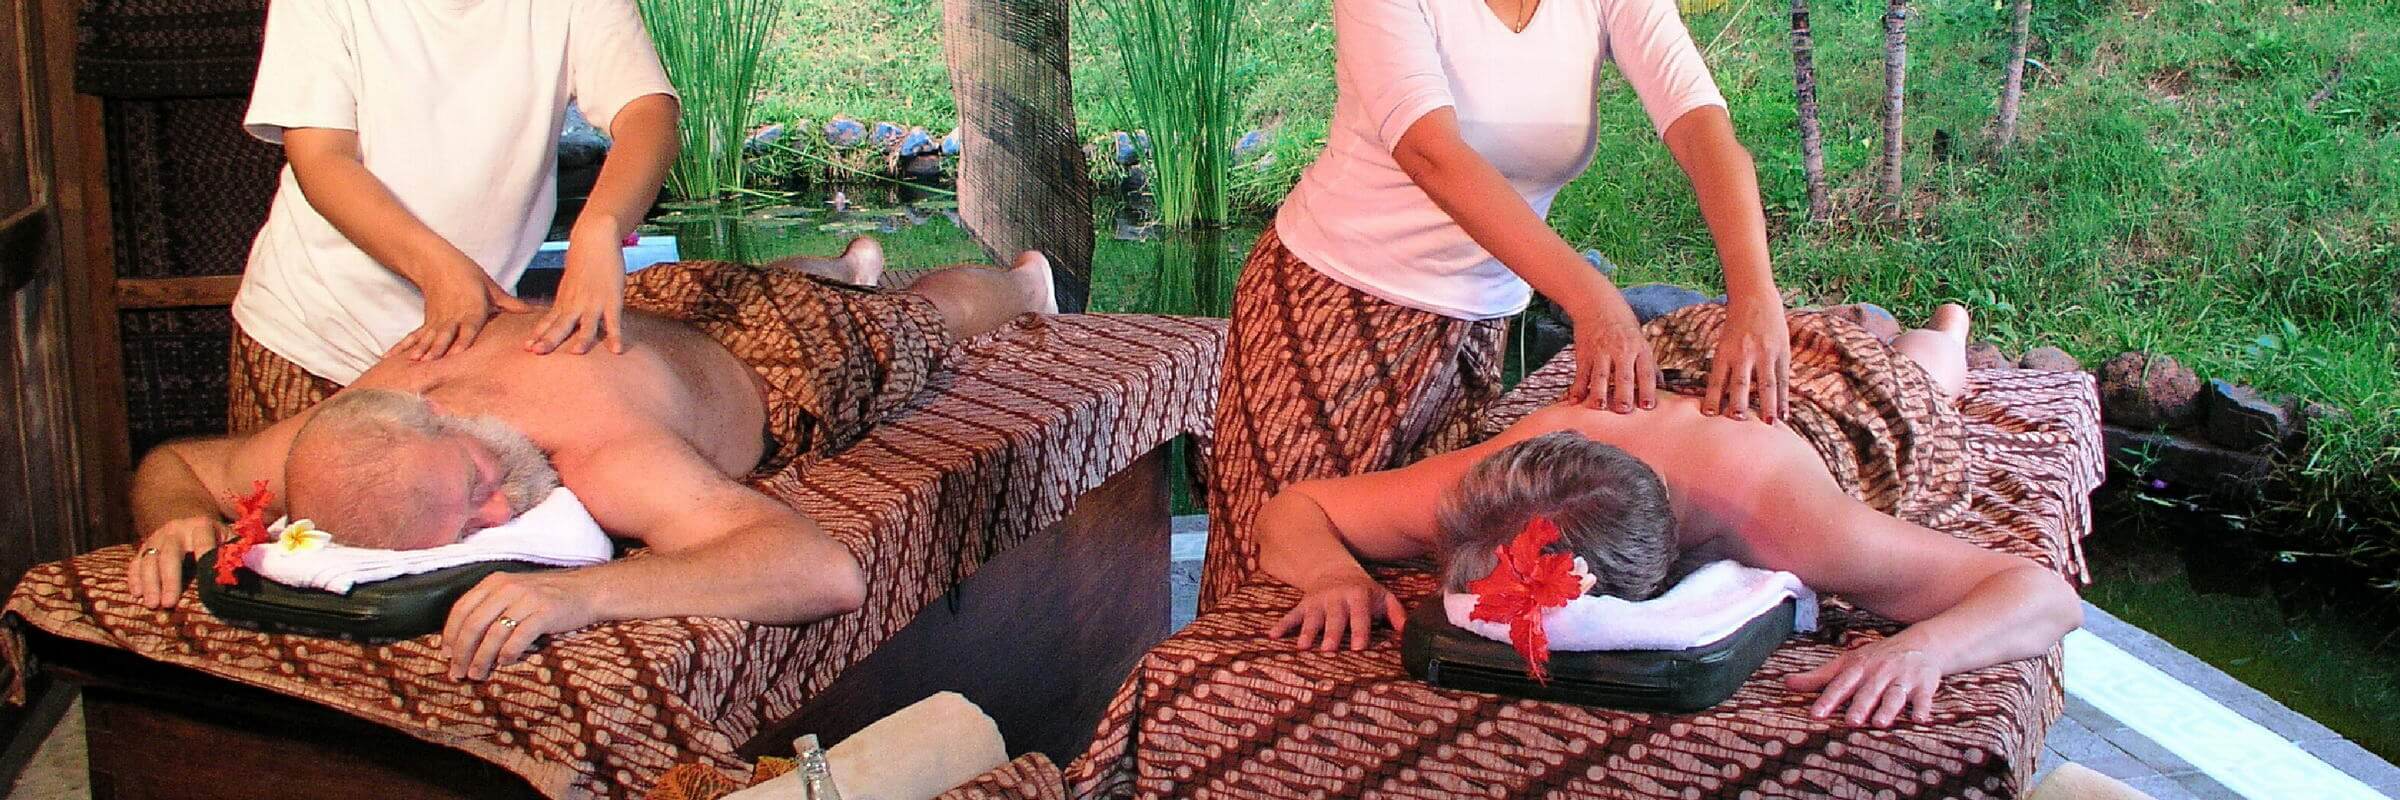 Im Spa-Bereich des Pondok Sari Beach & Spa Resort können Gäste sich mit traditionellen Massagen und anderen Wellnessanwendungen verwöhnen lassen.